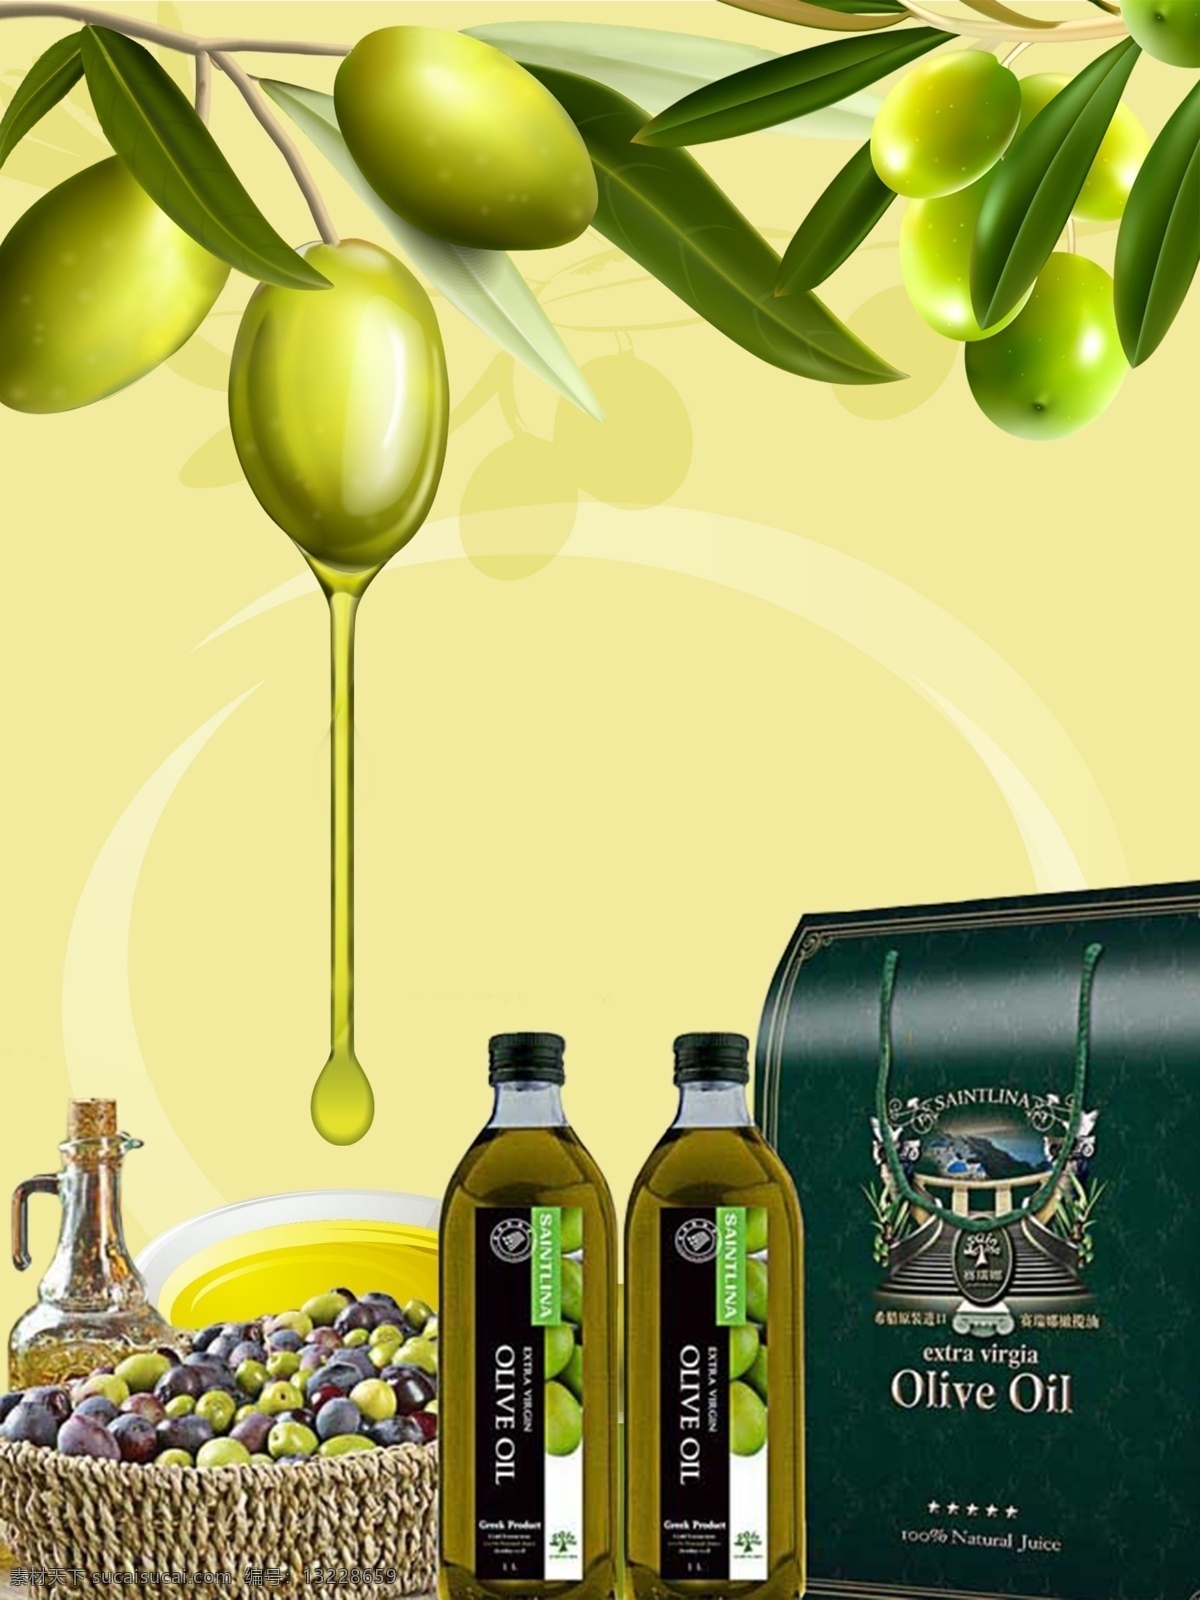 橄榄油 包装 广告 海报 橄榄油包装 橄榄油海报 橄榄油广告 食用油 生活百科 餐饮美食